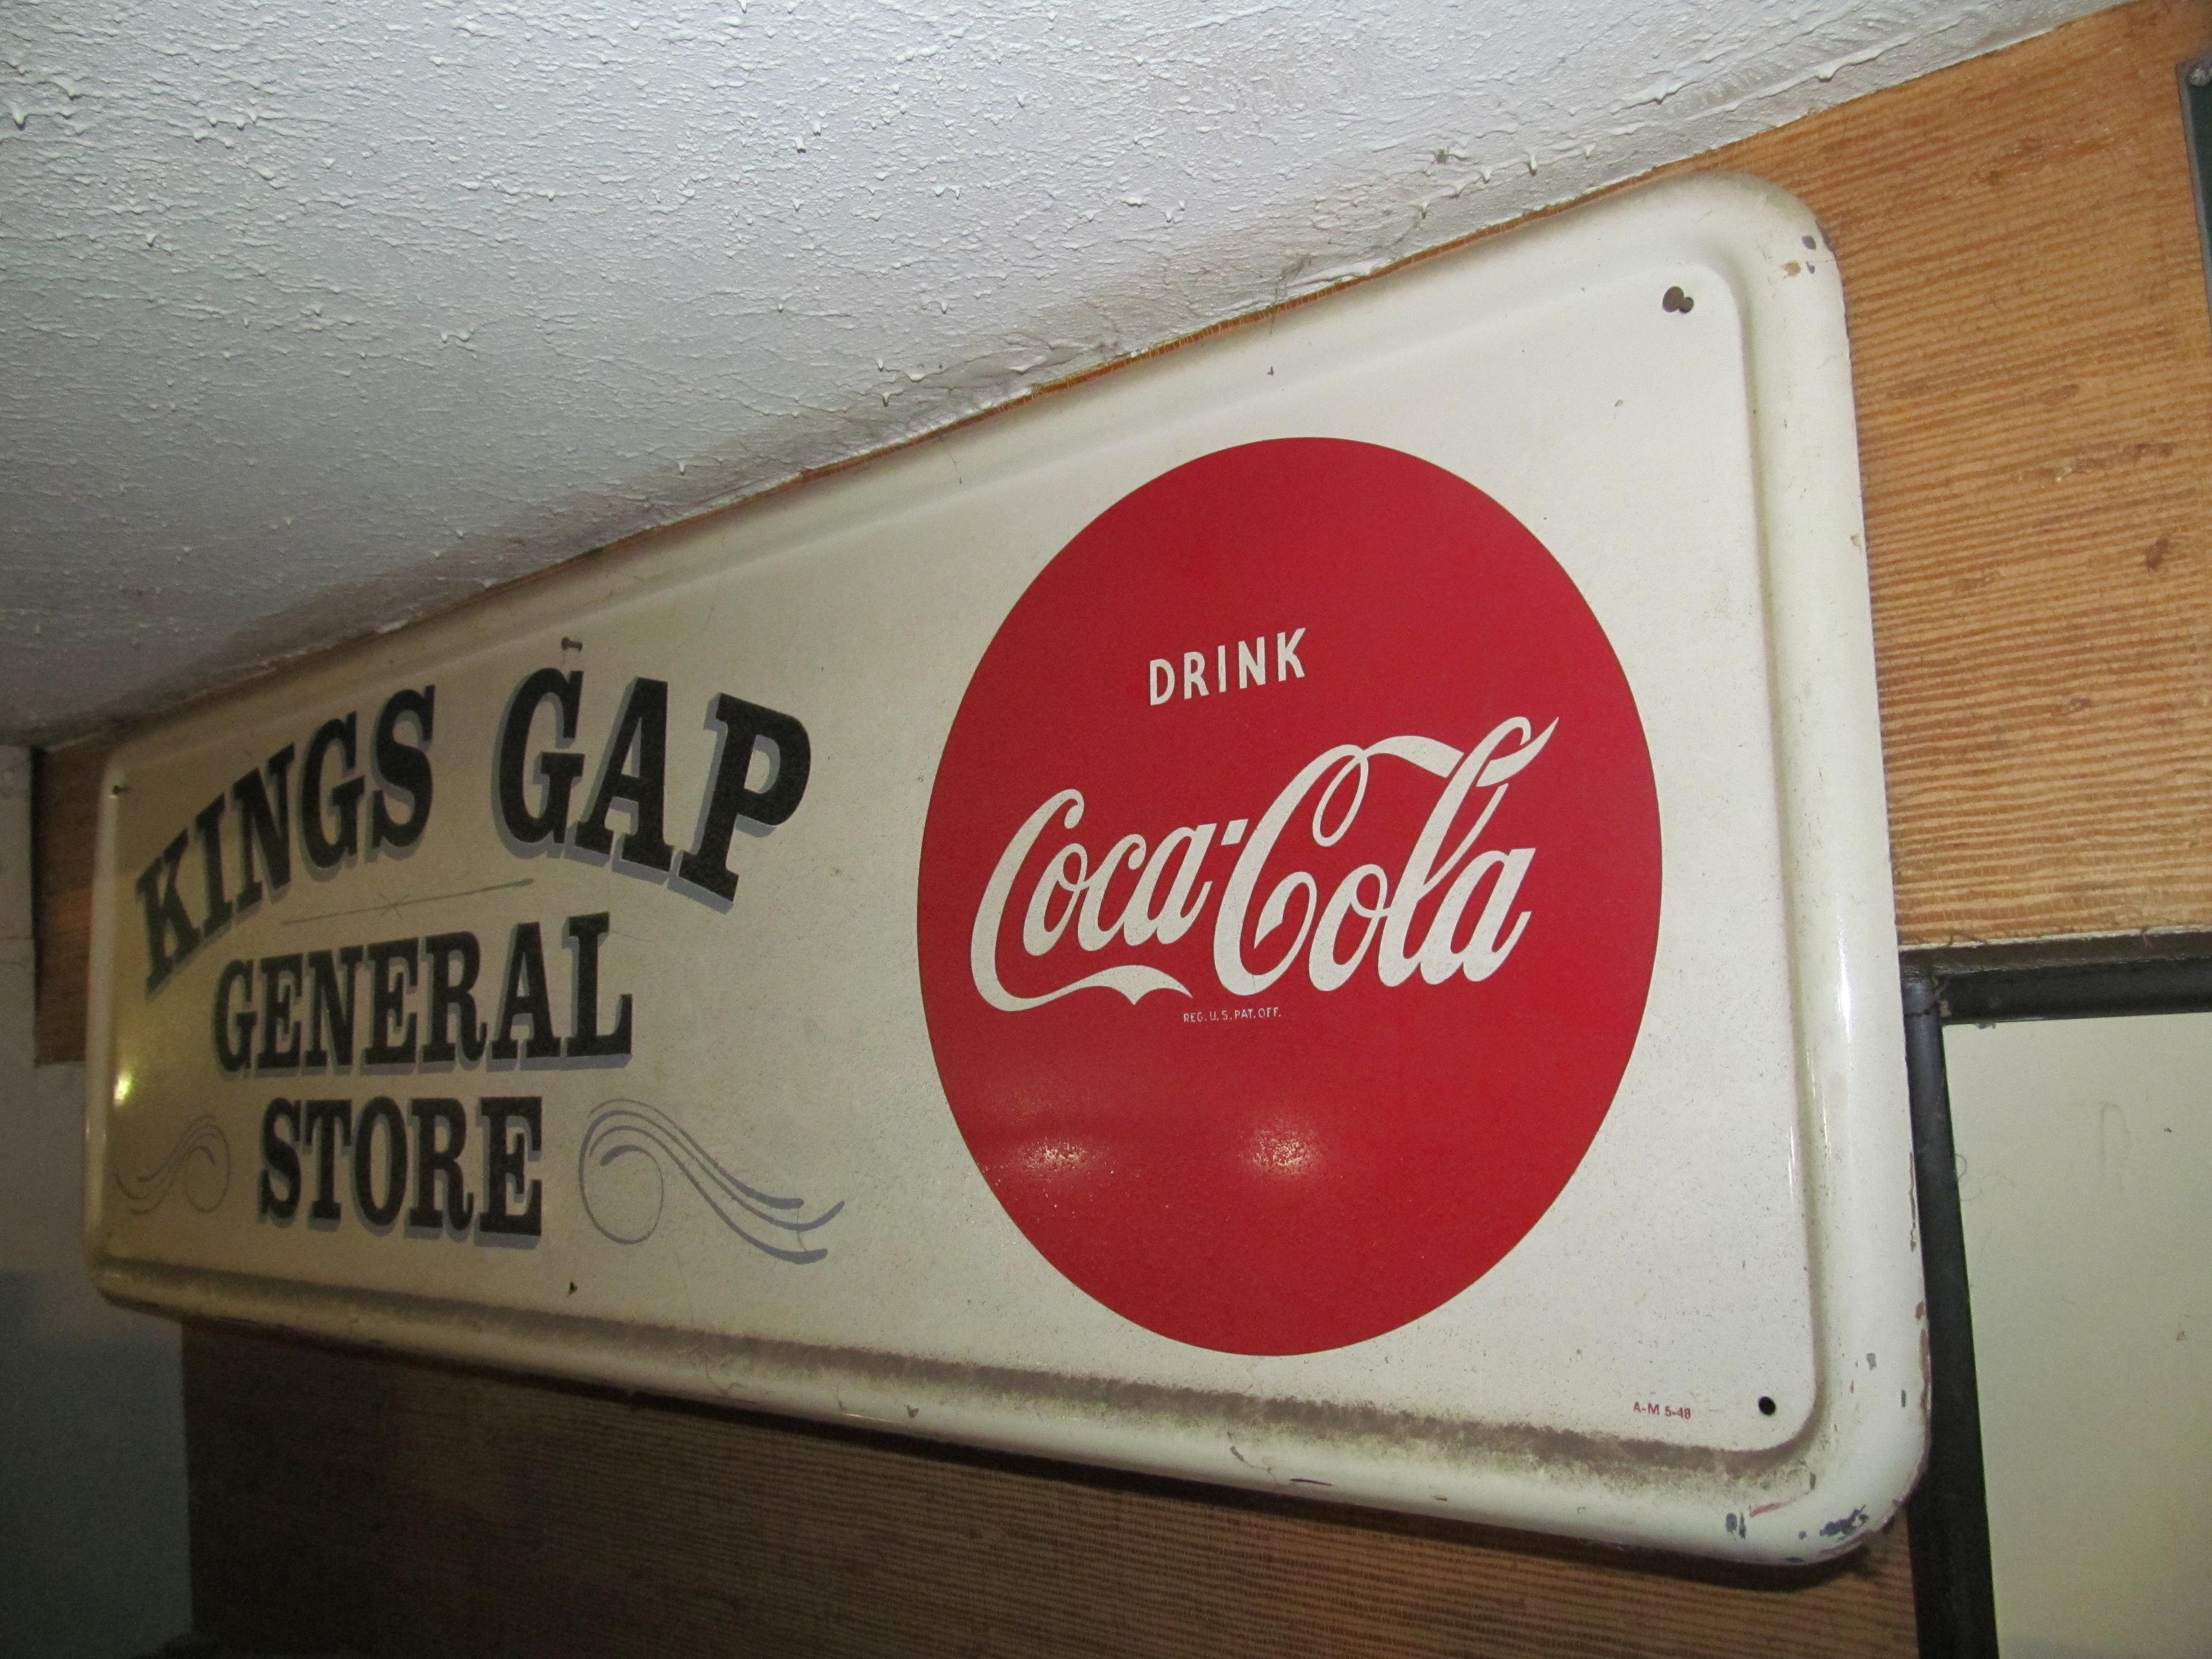 Drink Coca-Cola Kings Gap General Store